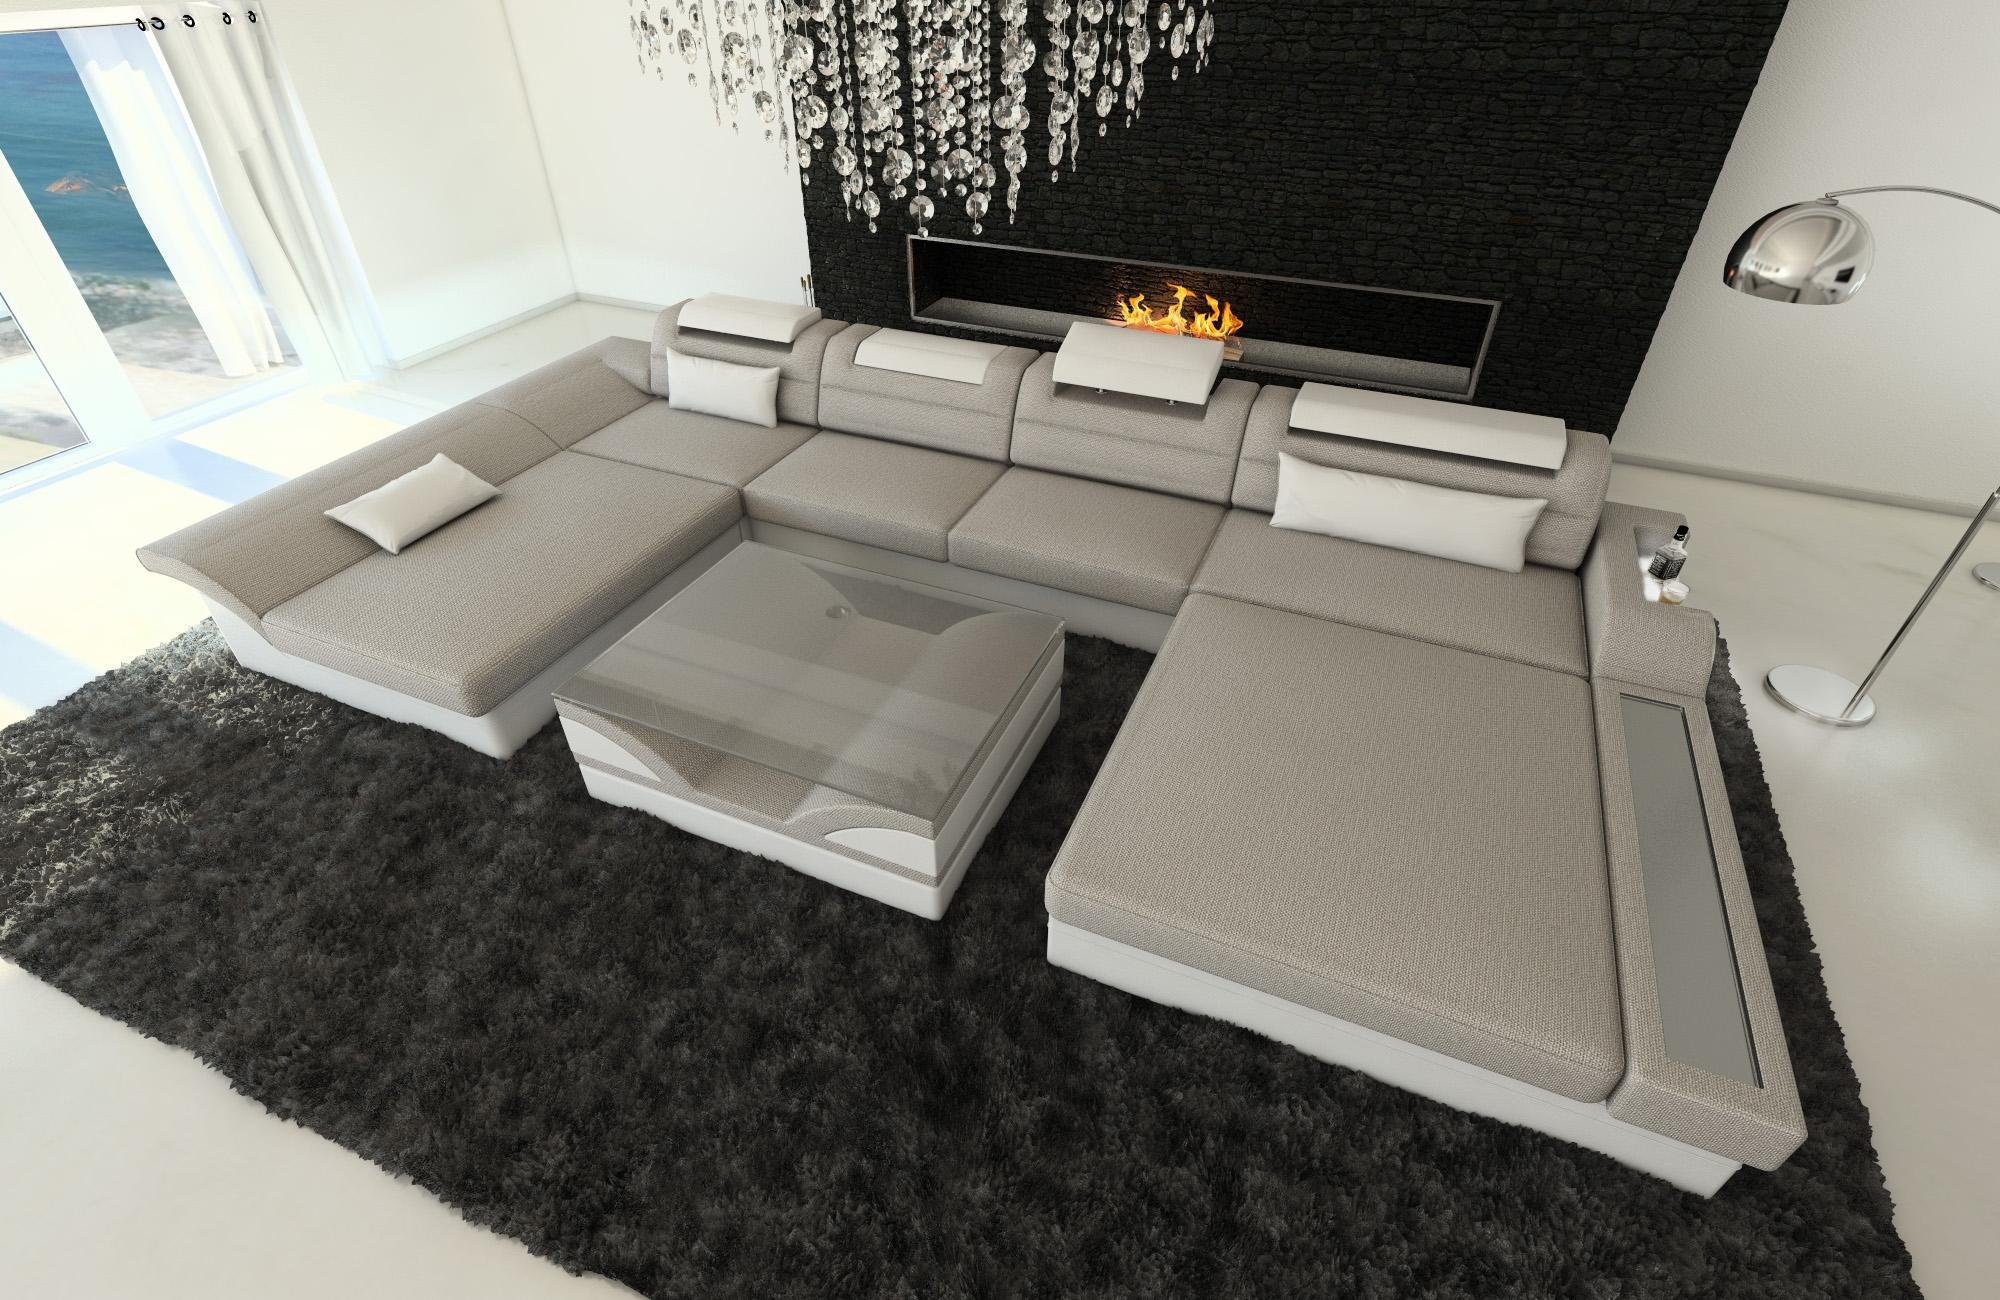 mit Sofa Dreams Monza Bettfunktion, Form U Wohnlandschaft LED, Stoff Polster Stoffsofa, Designersofa H2 ausziehbare Macchiato-Weiss Couch